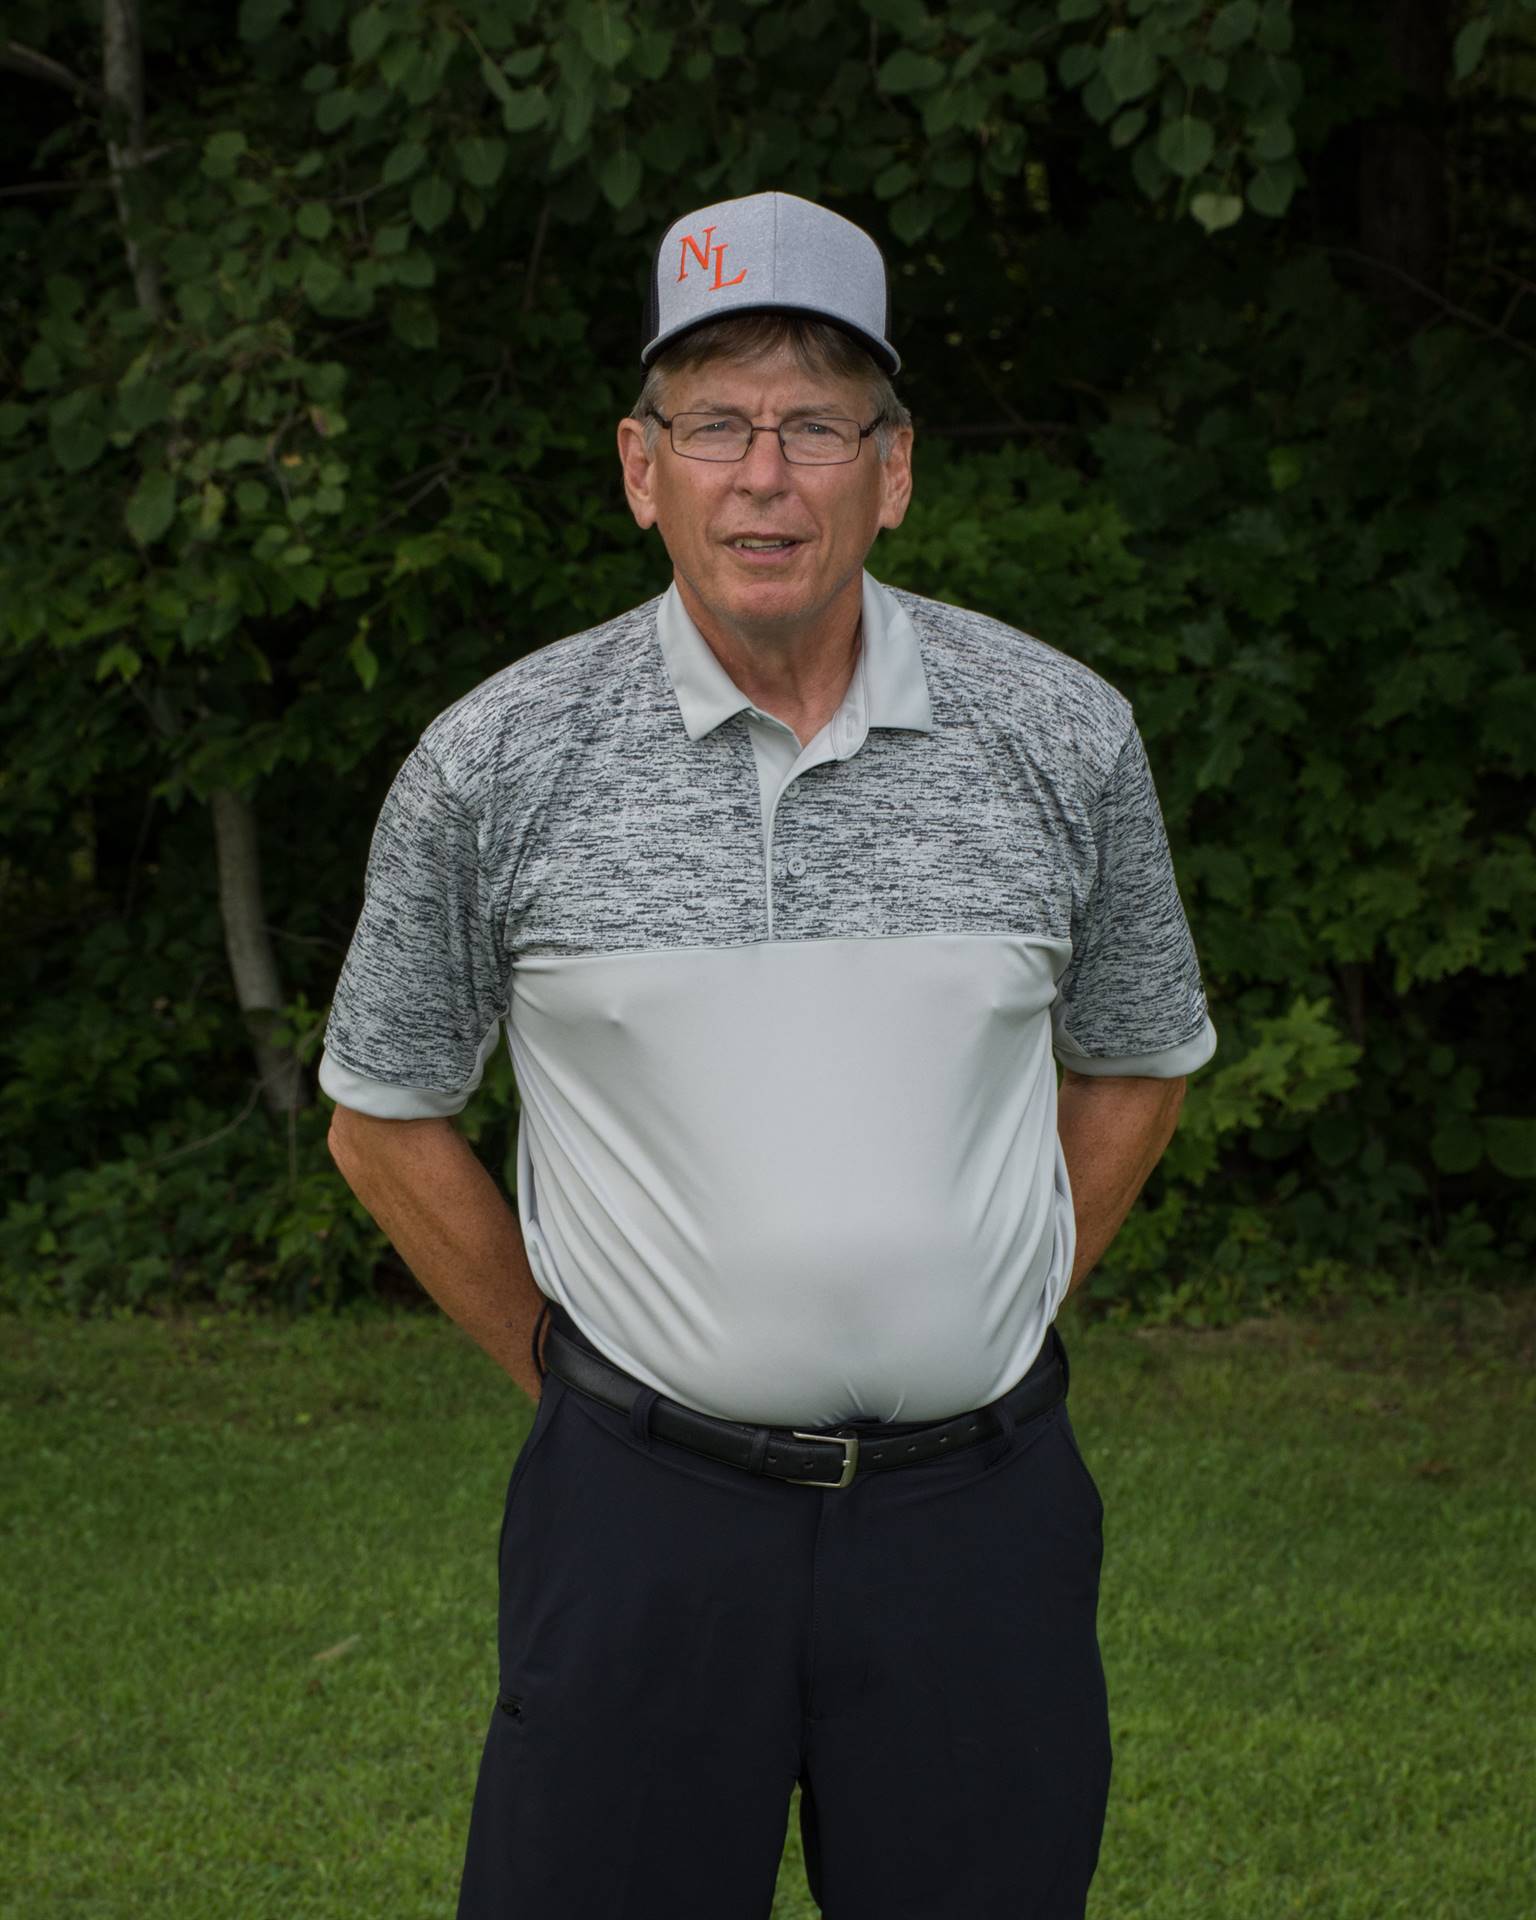 2018 Golf Coach - Tim O'Hare